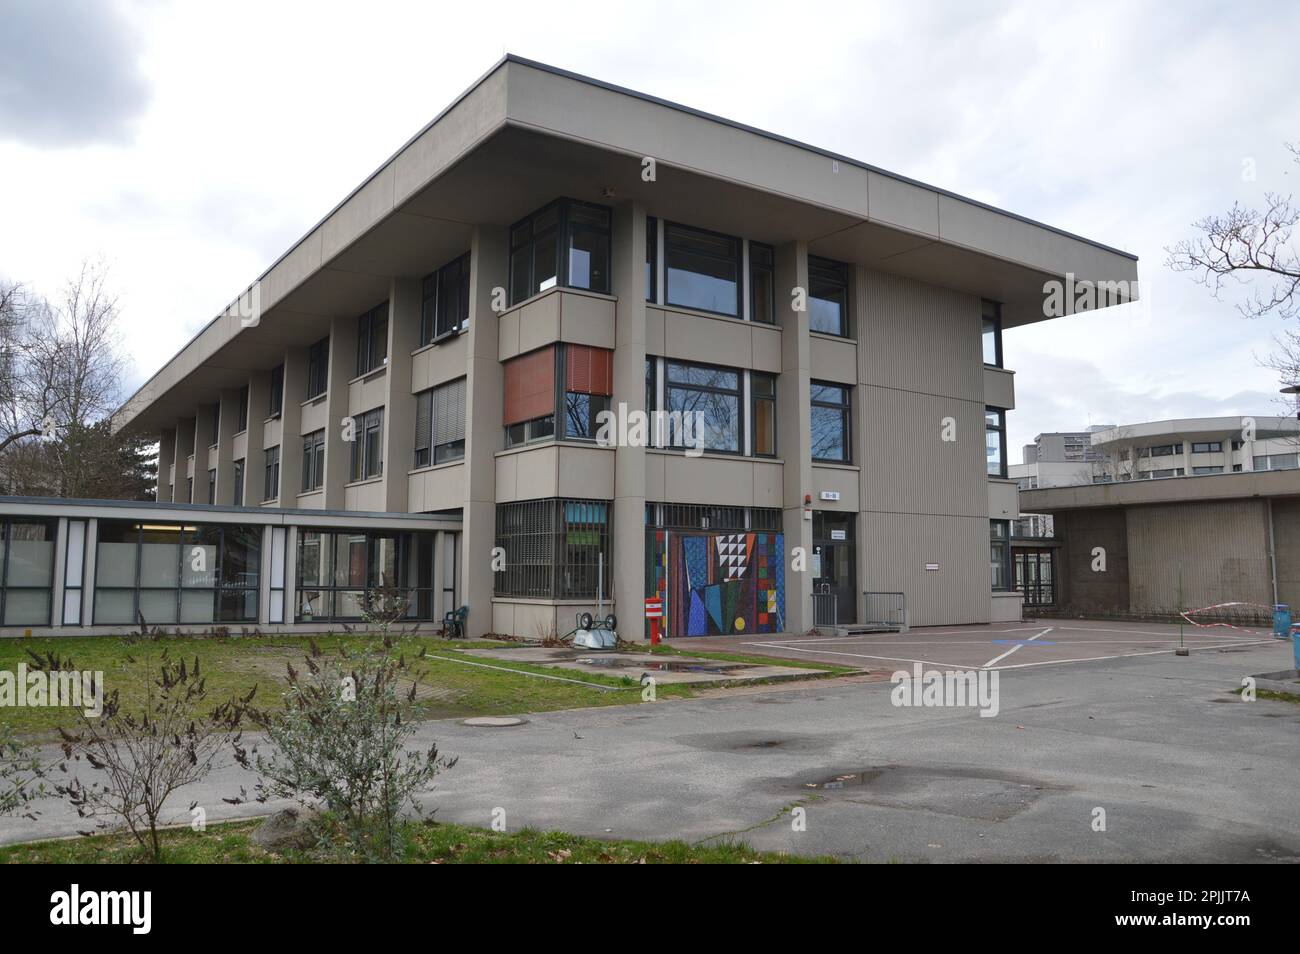 Berlin, Germany - March 26, 2023 - The Walter Gropius Schule designed by Walter Gropius in Gropiusstadt. The school was opening in 1968. (Photo by Markku Rainer Peltonen) Stock Photo